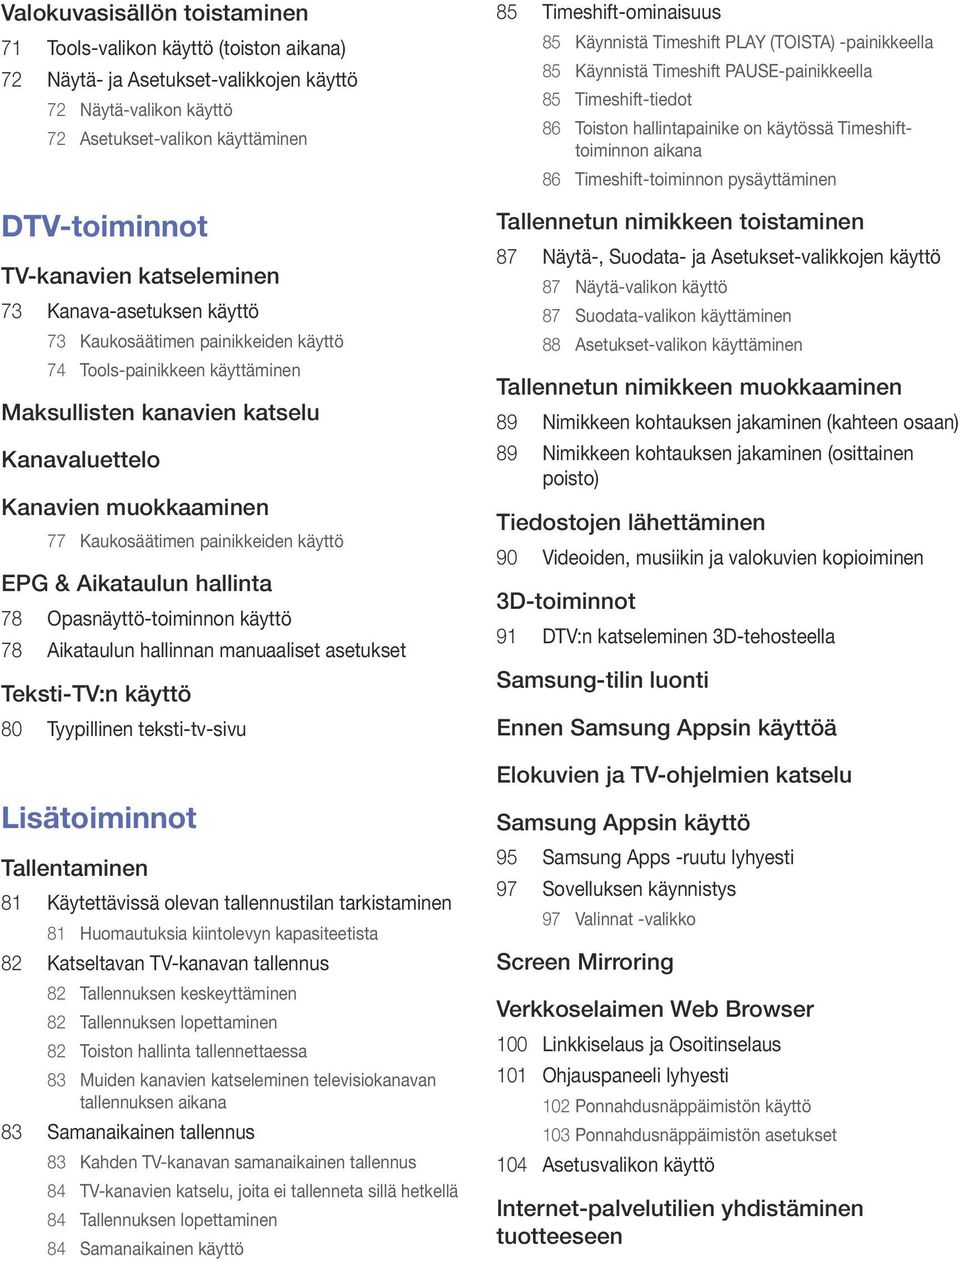 painikkeiden käyttö EPG & Aikataulun hallinta 78 Opasnäyttö-toiminnon käyttö 78 Aikataulun hallinnan manuaaliset asetukset Teksti-TV:n käyttö 80 Tyypillinen teksti-tv-sivu Lisätoiminnot Tallentaminen